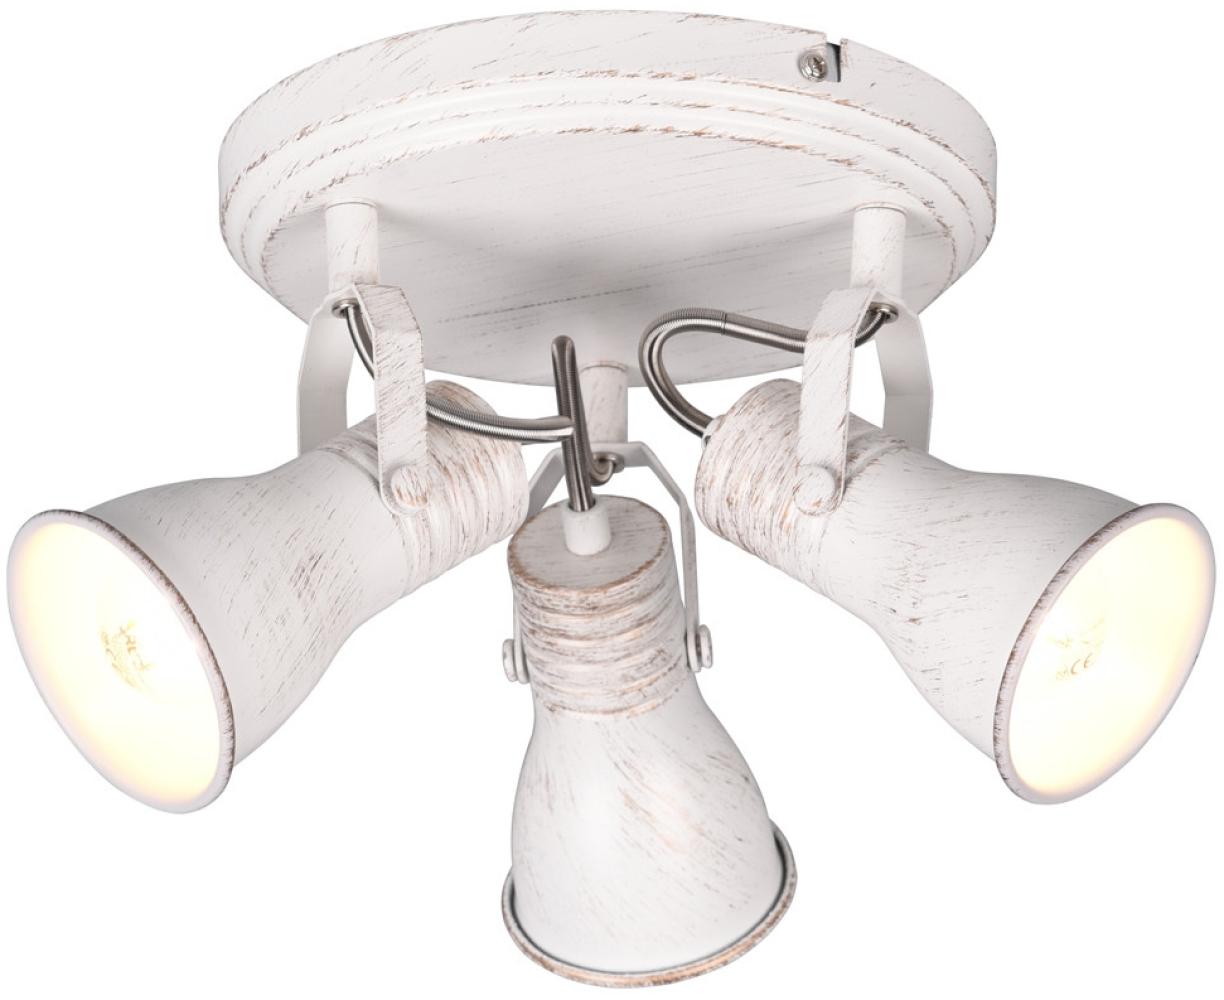 LED Deckenstrahler 3 flammig verstellbare Metallschirme in Weiß, Ø 28cm Bild 1